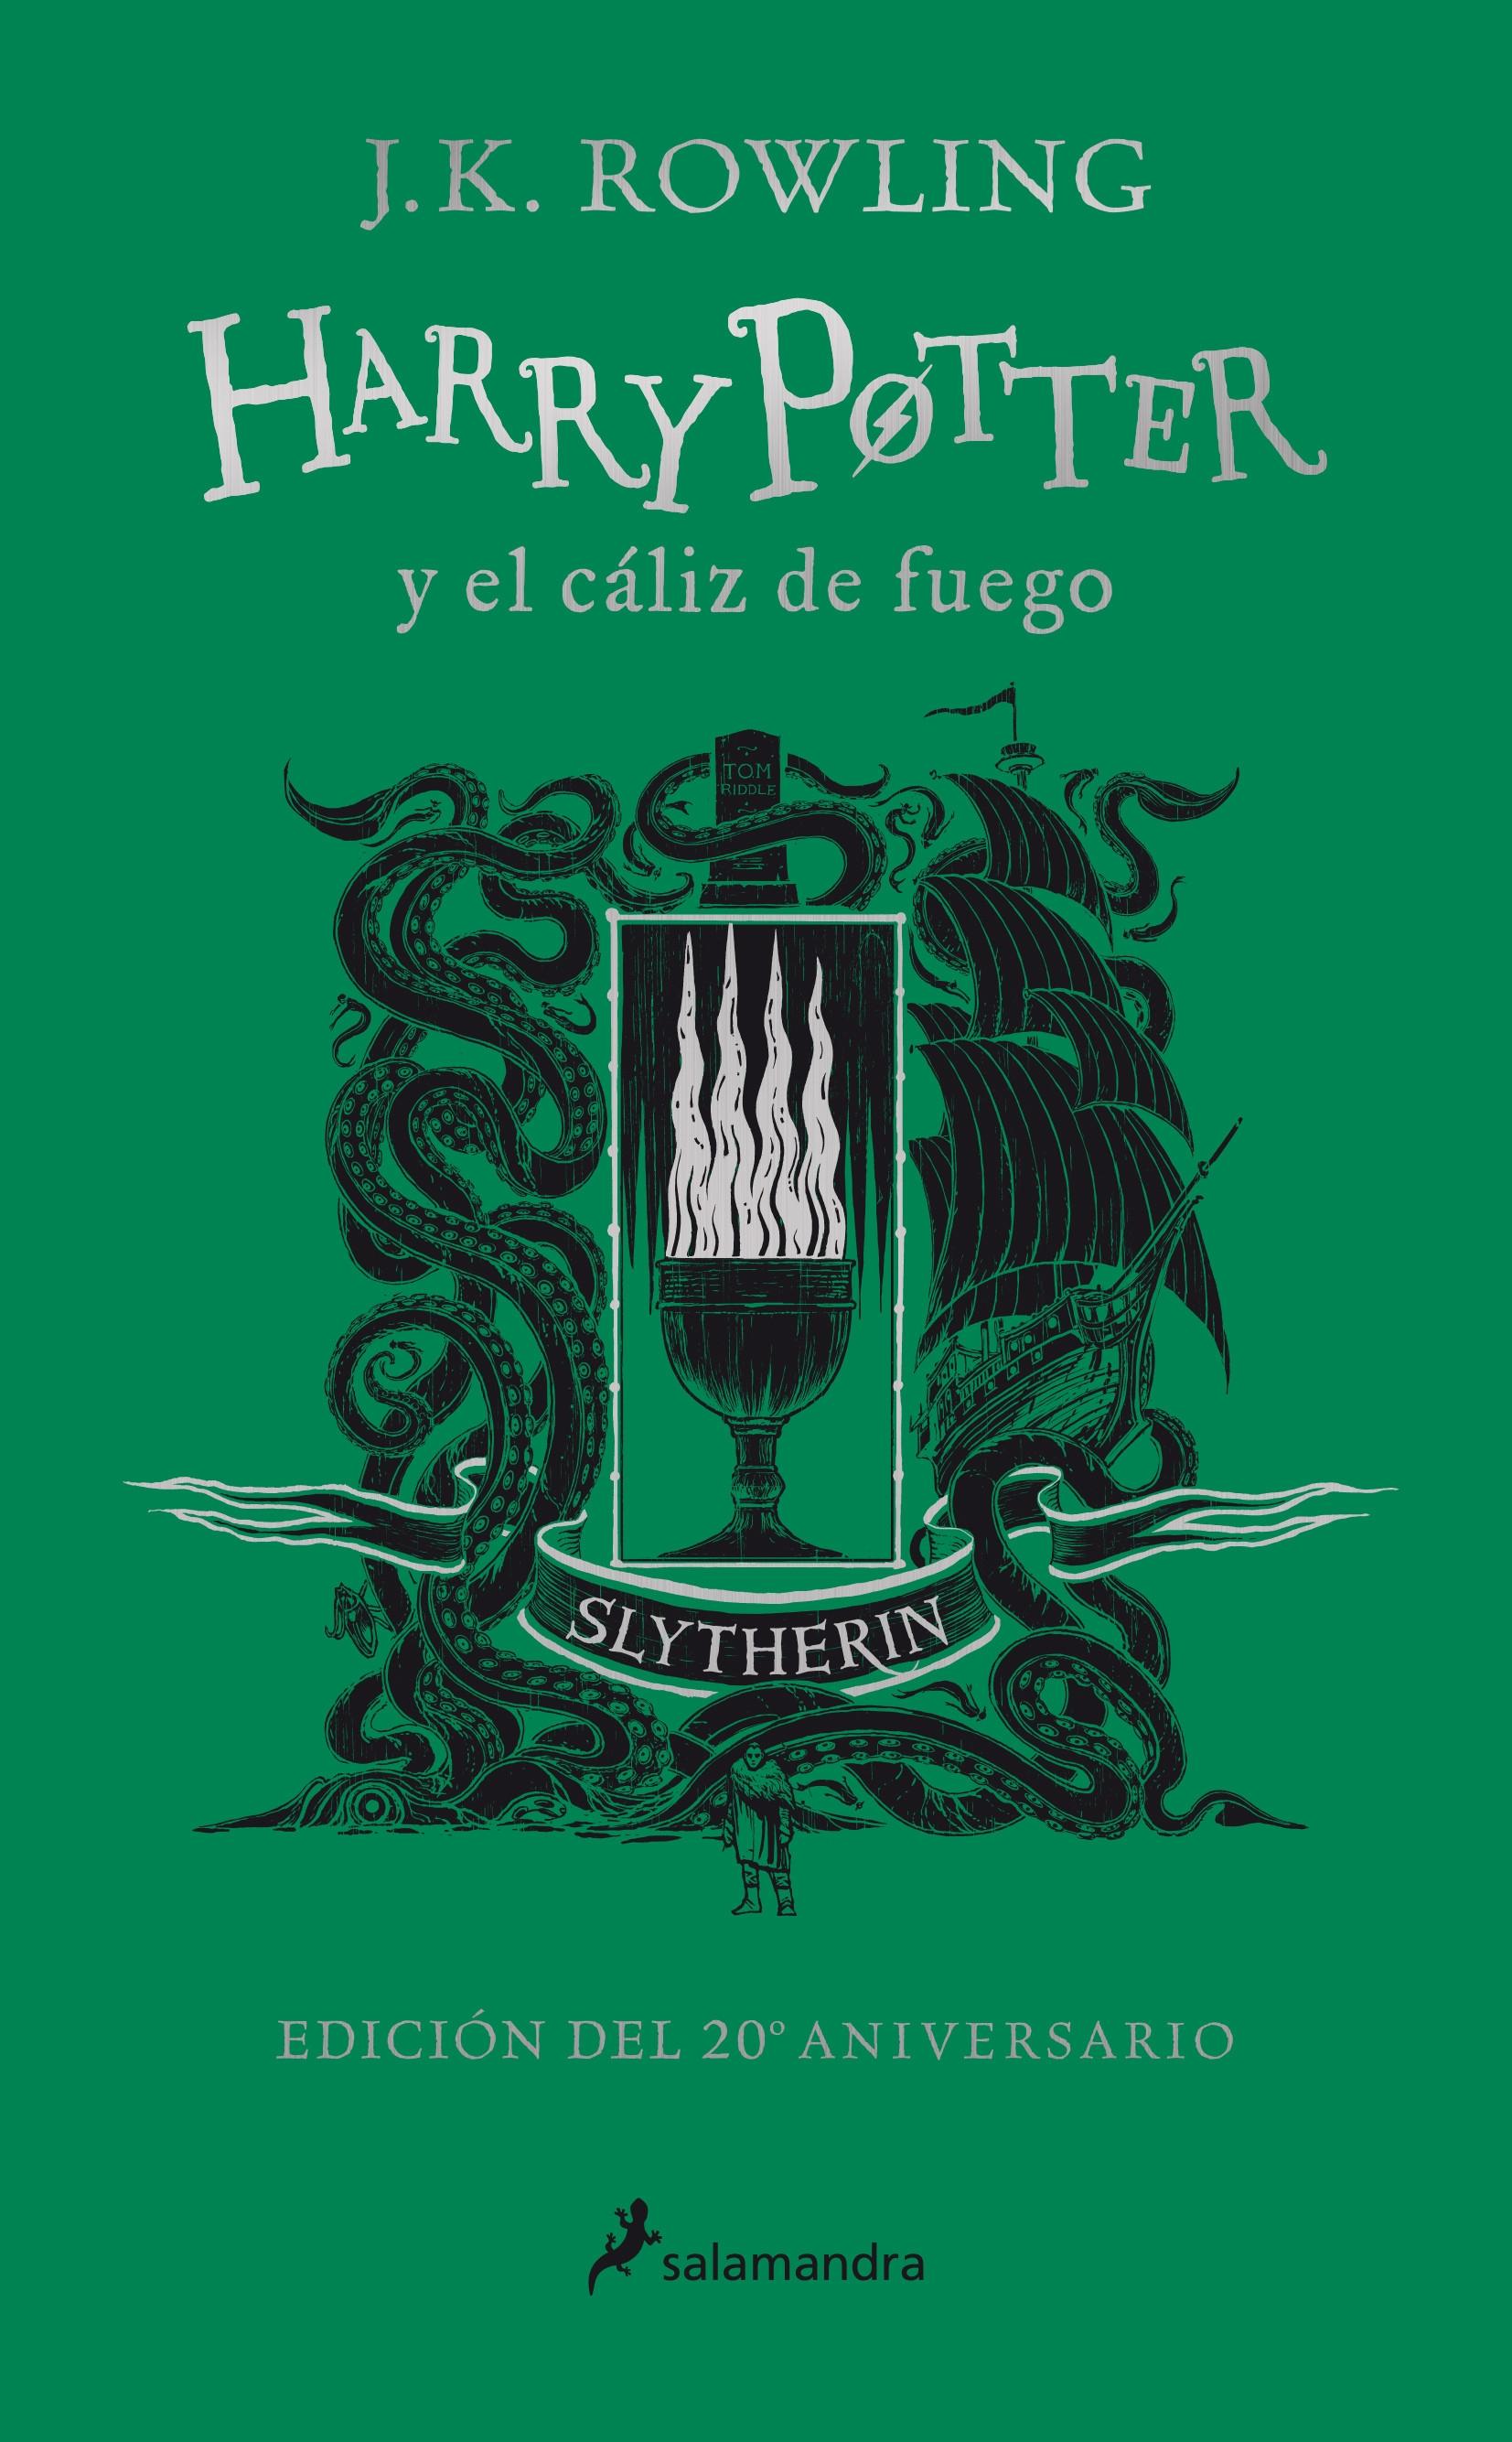 Harry Potter y el cáliz de fuego: Slytherin (Harry Potter - 4) "Orgullo - Ambición - Astucia (Edición del 20 Aniversario)". 